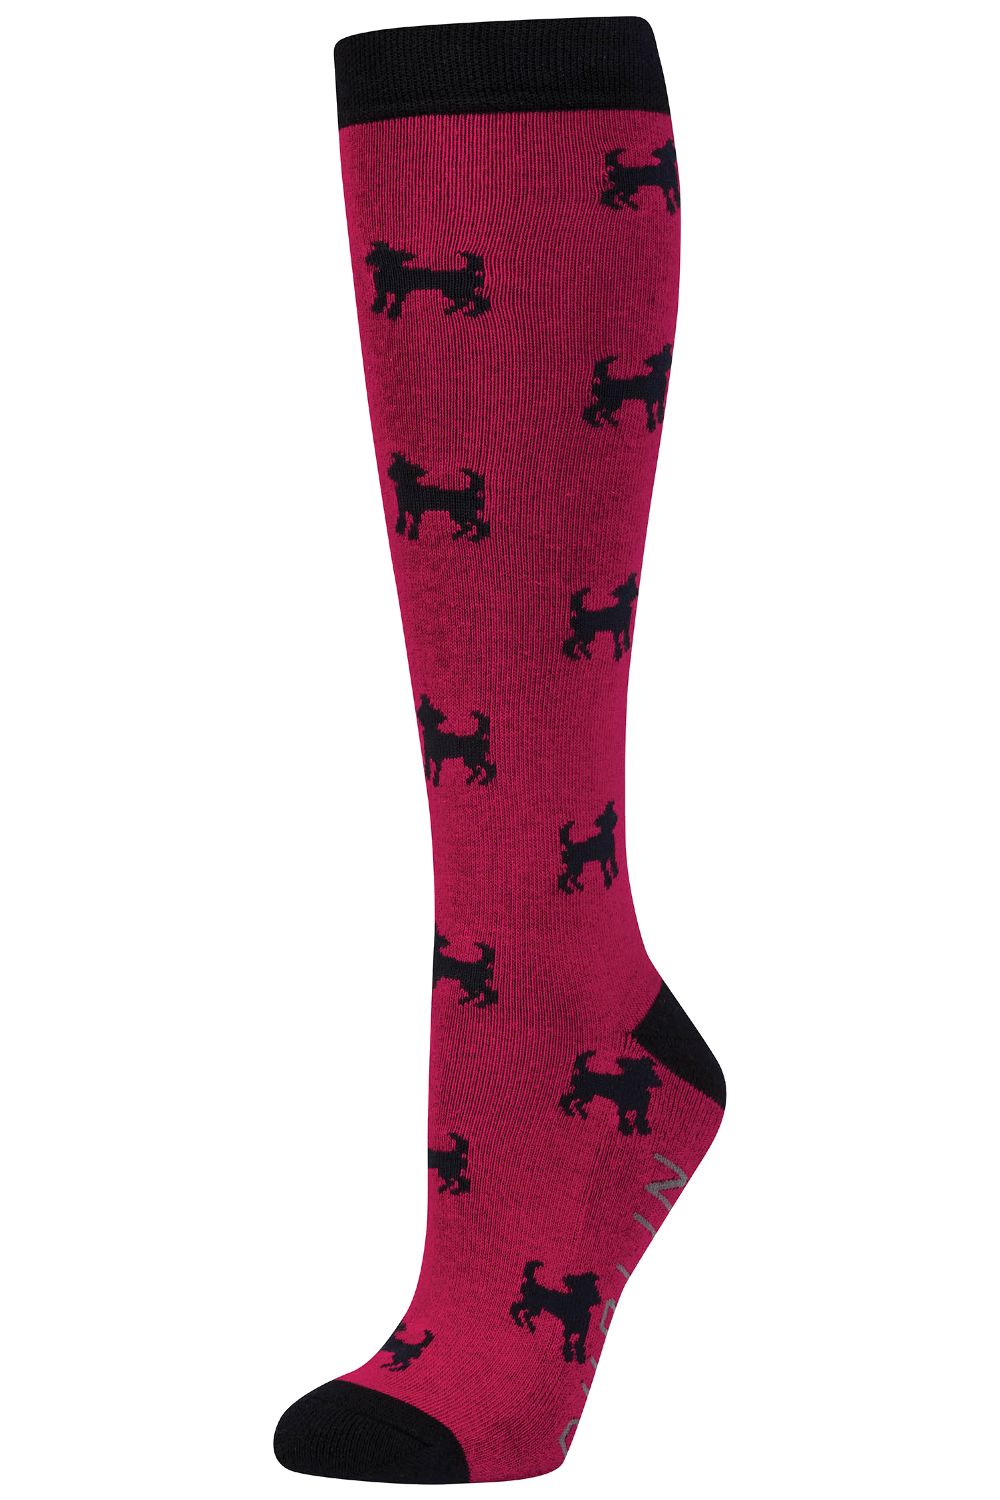 Dublin Single Pack Socks - RED DOG 